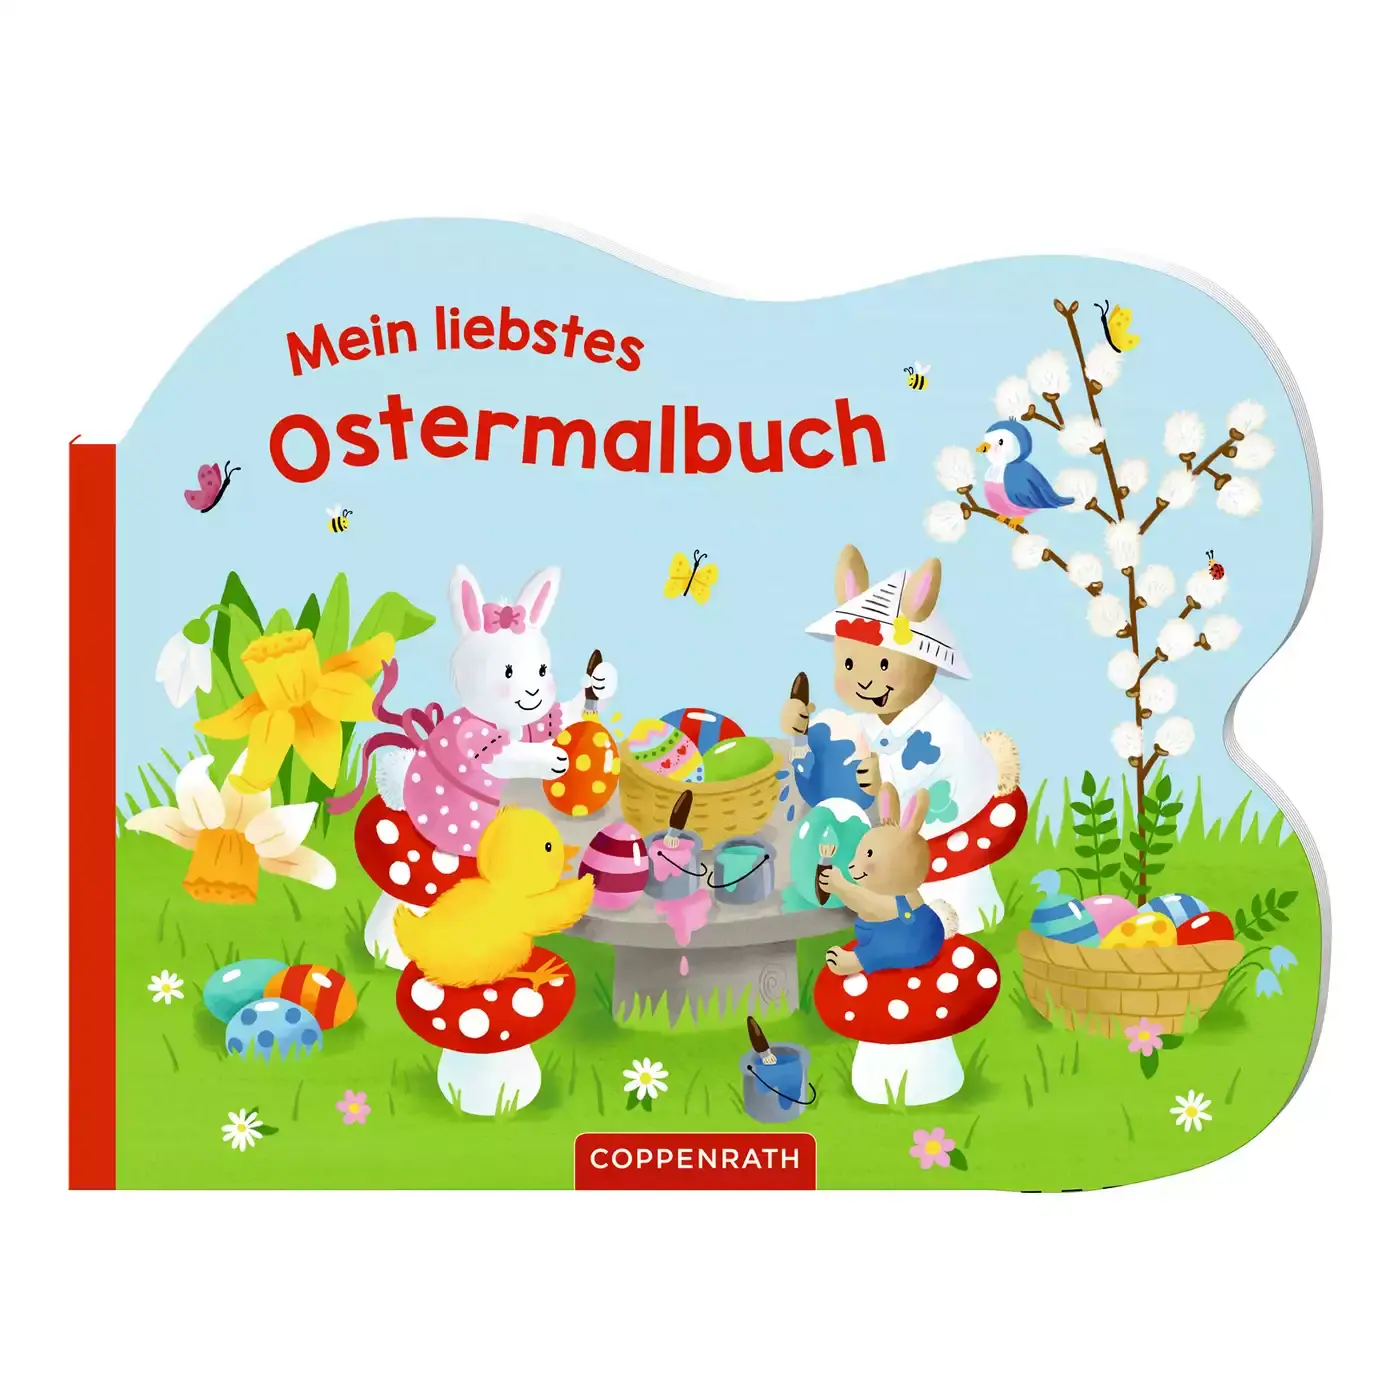 Mein liebstes Ostermalbuch COPPENRATH 2000580240306 1